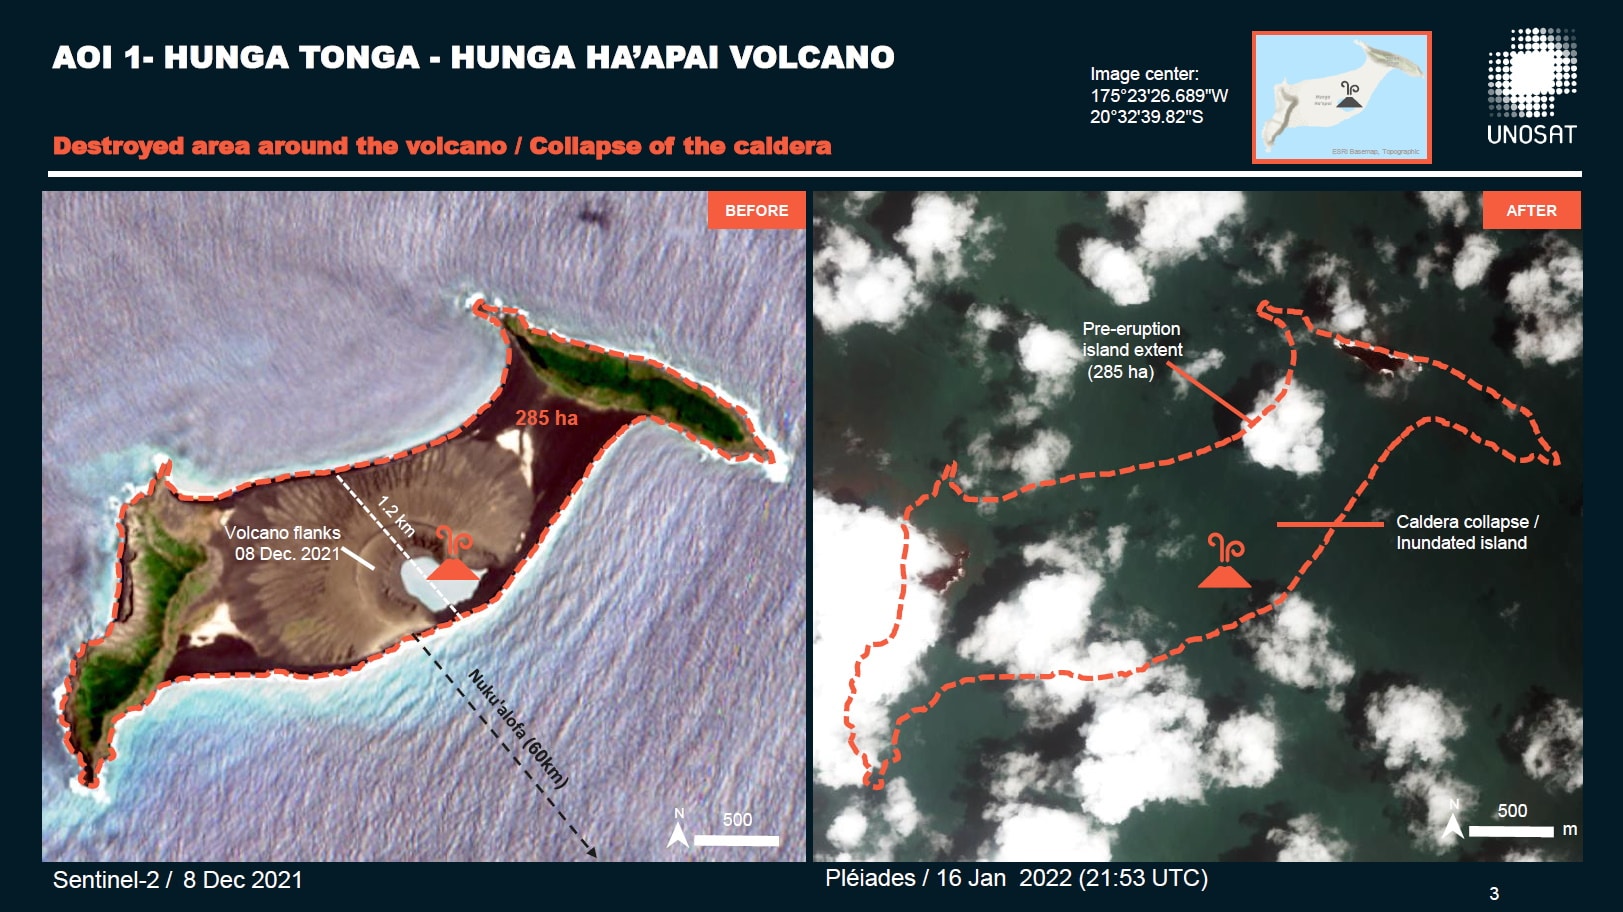 Le volcan Hunga Tonga avant et après son éruption du 15 janvier. L’île qui résultait de la caldera semble avoir disparue. Le document d’interprétation de la Charte indique en effet: «effondrement de la caldera / île submergée». Crédit : Charte Internationale Espace et Catastrophes Majeures